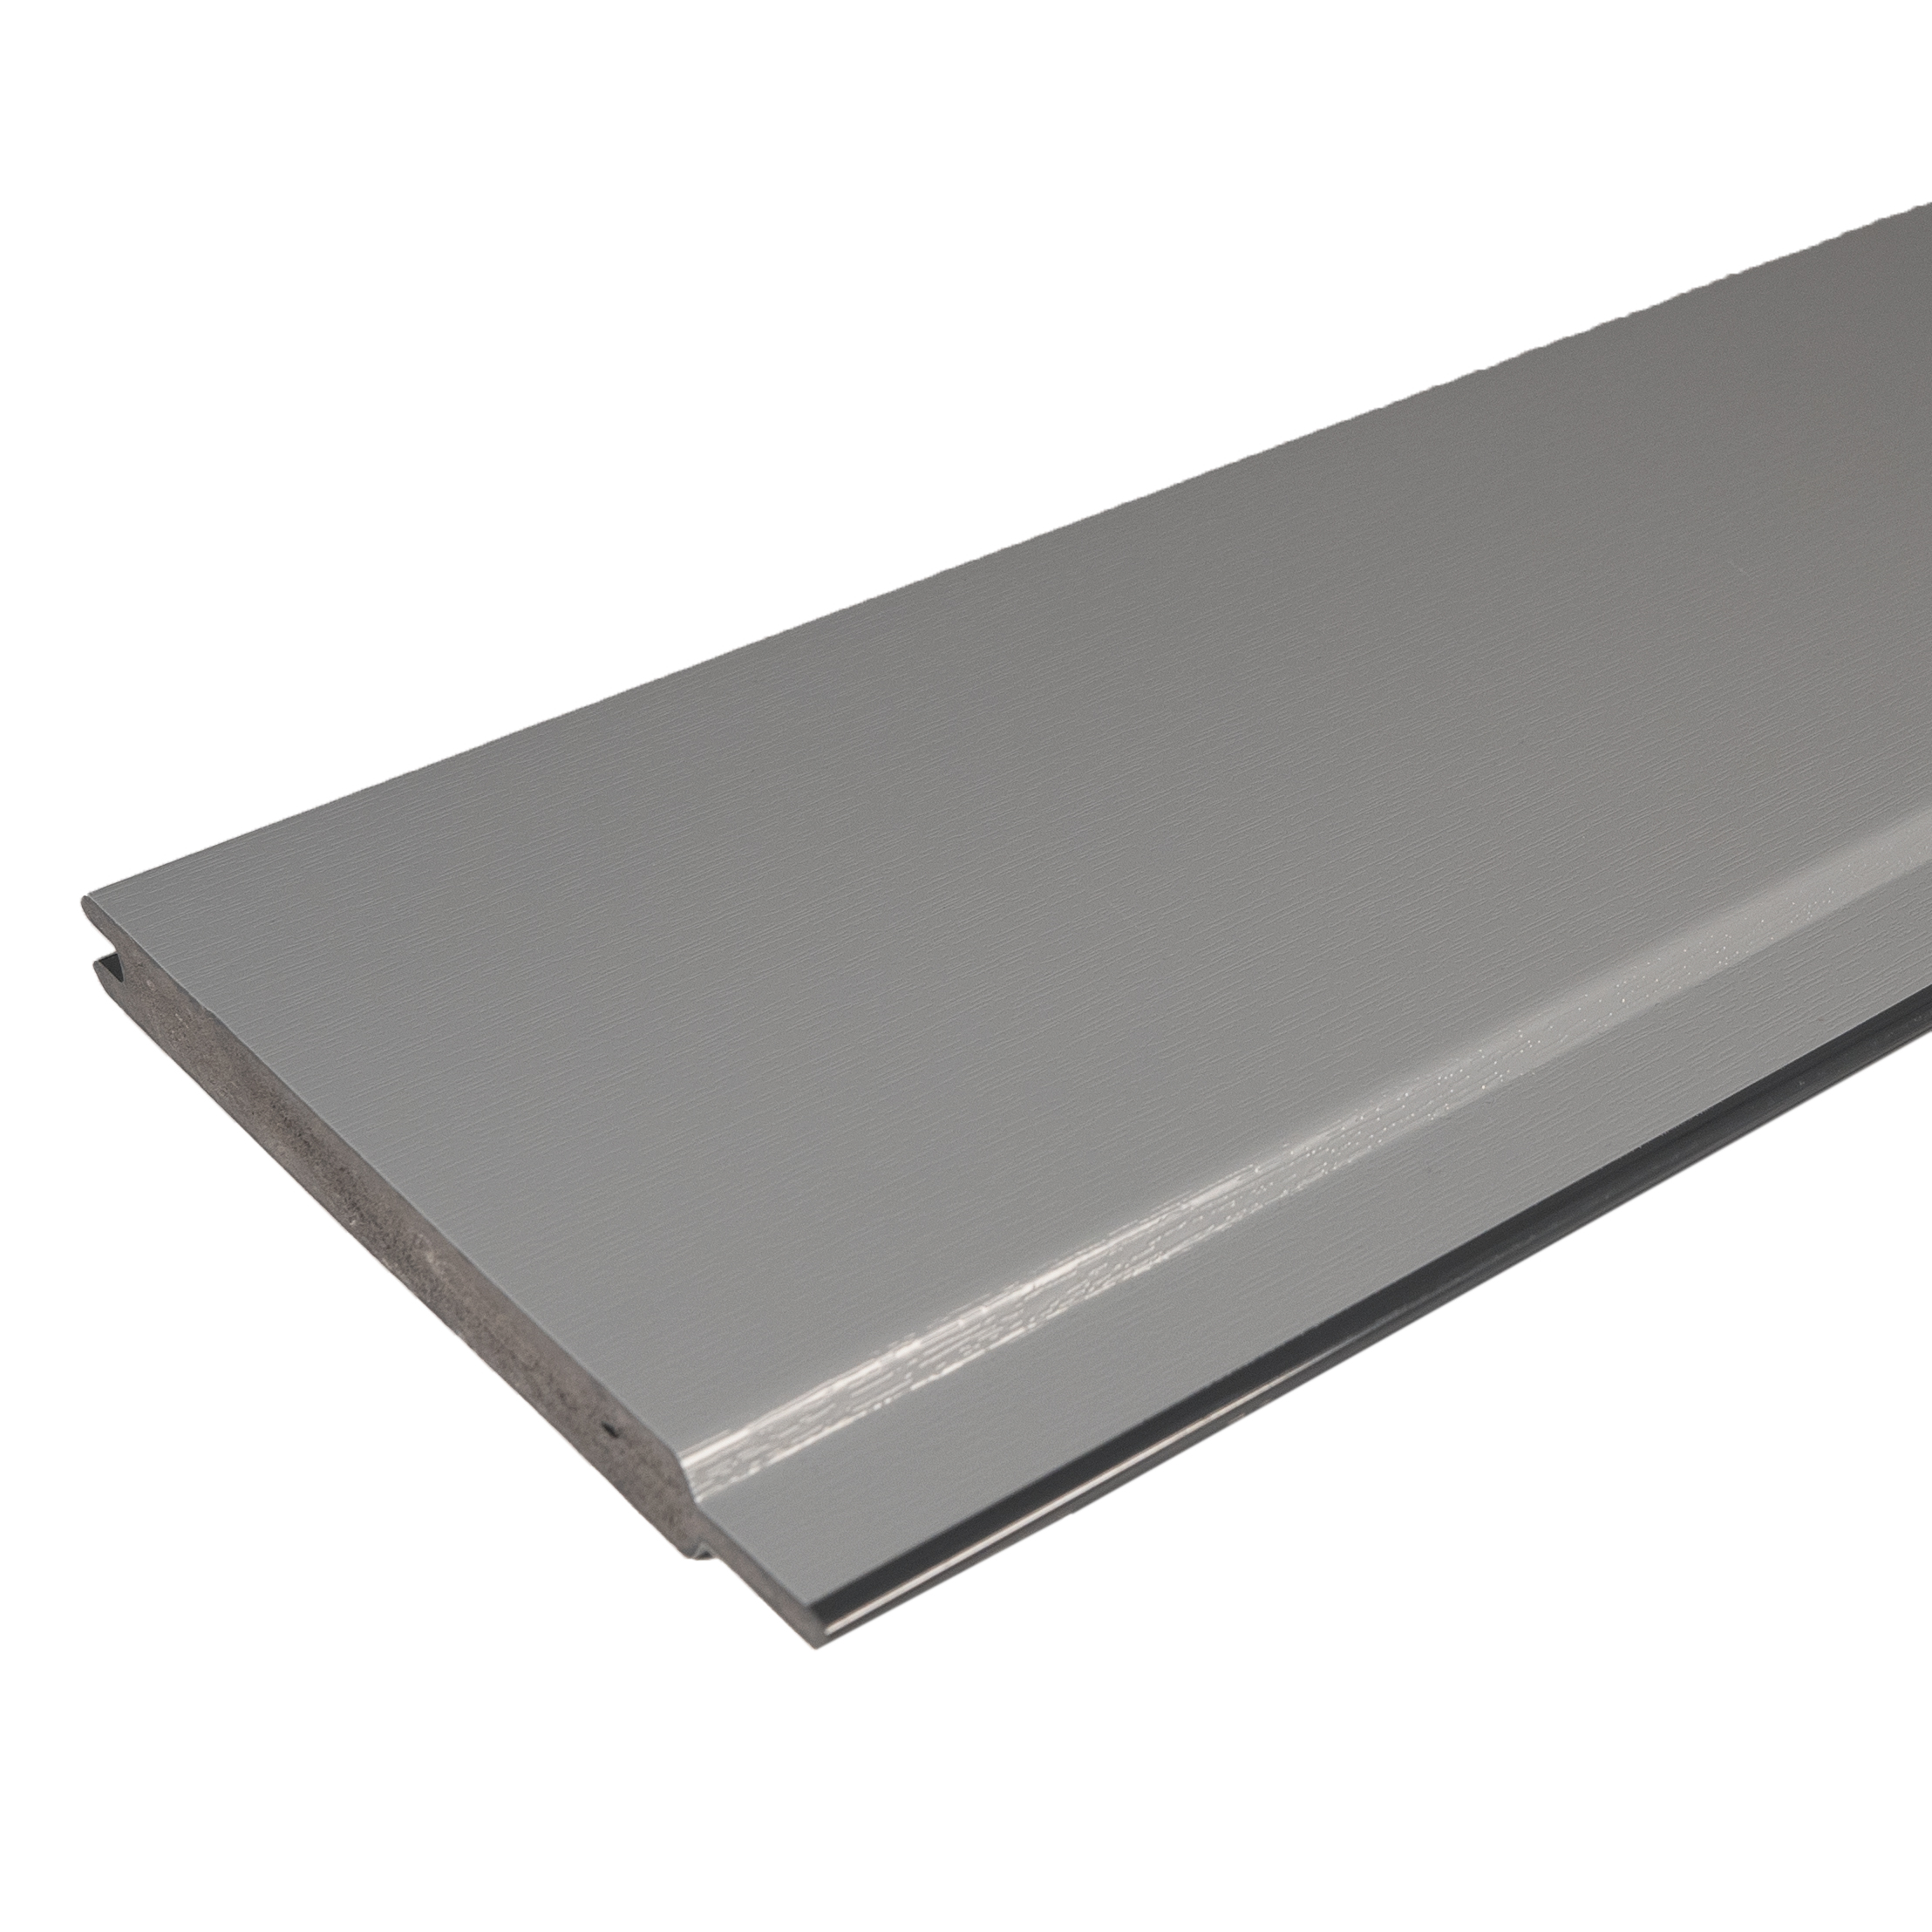 Torfüllung Kunststoff Silbergrau ähnl. RAL 7001 - Massiv Kunststoffbretter für Tore, Türen & Zäune 143 x 15 mm